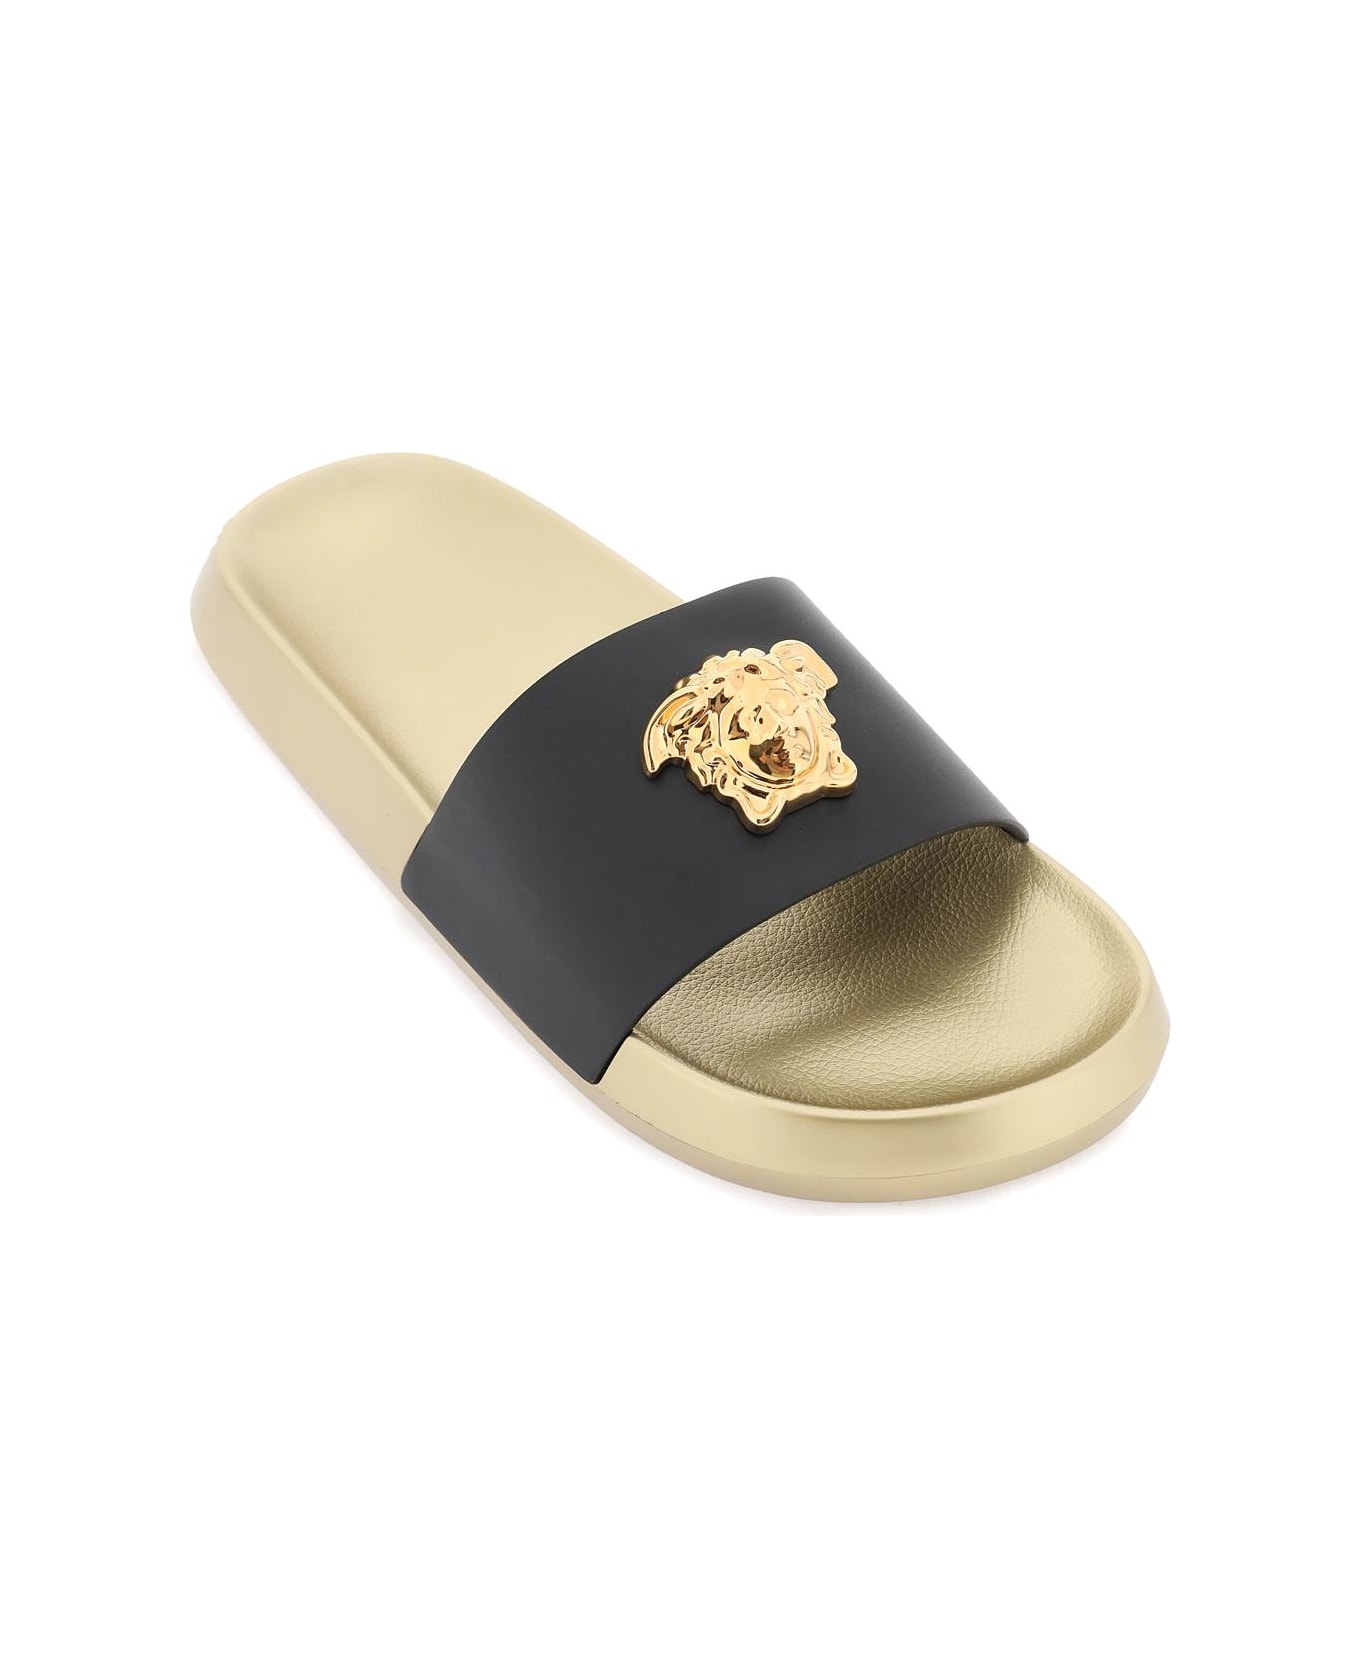 Versace La Medusa Rubber And Calfskin Slides - Gold